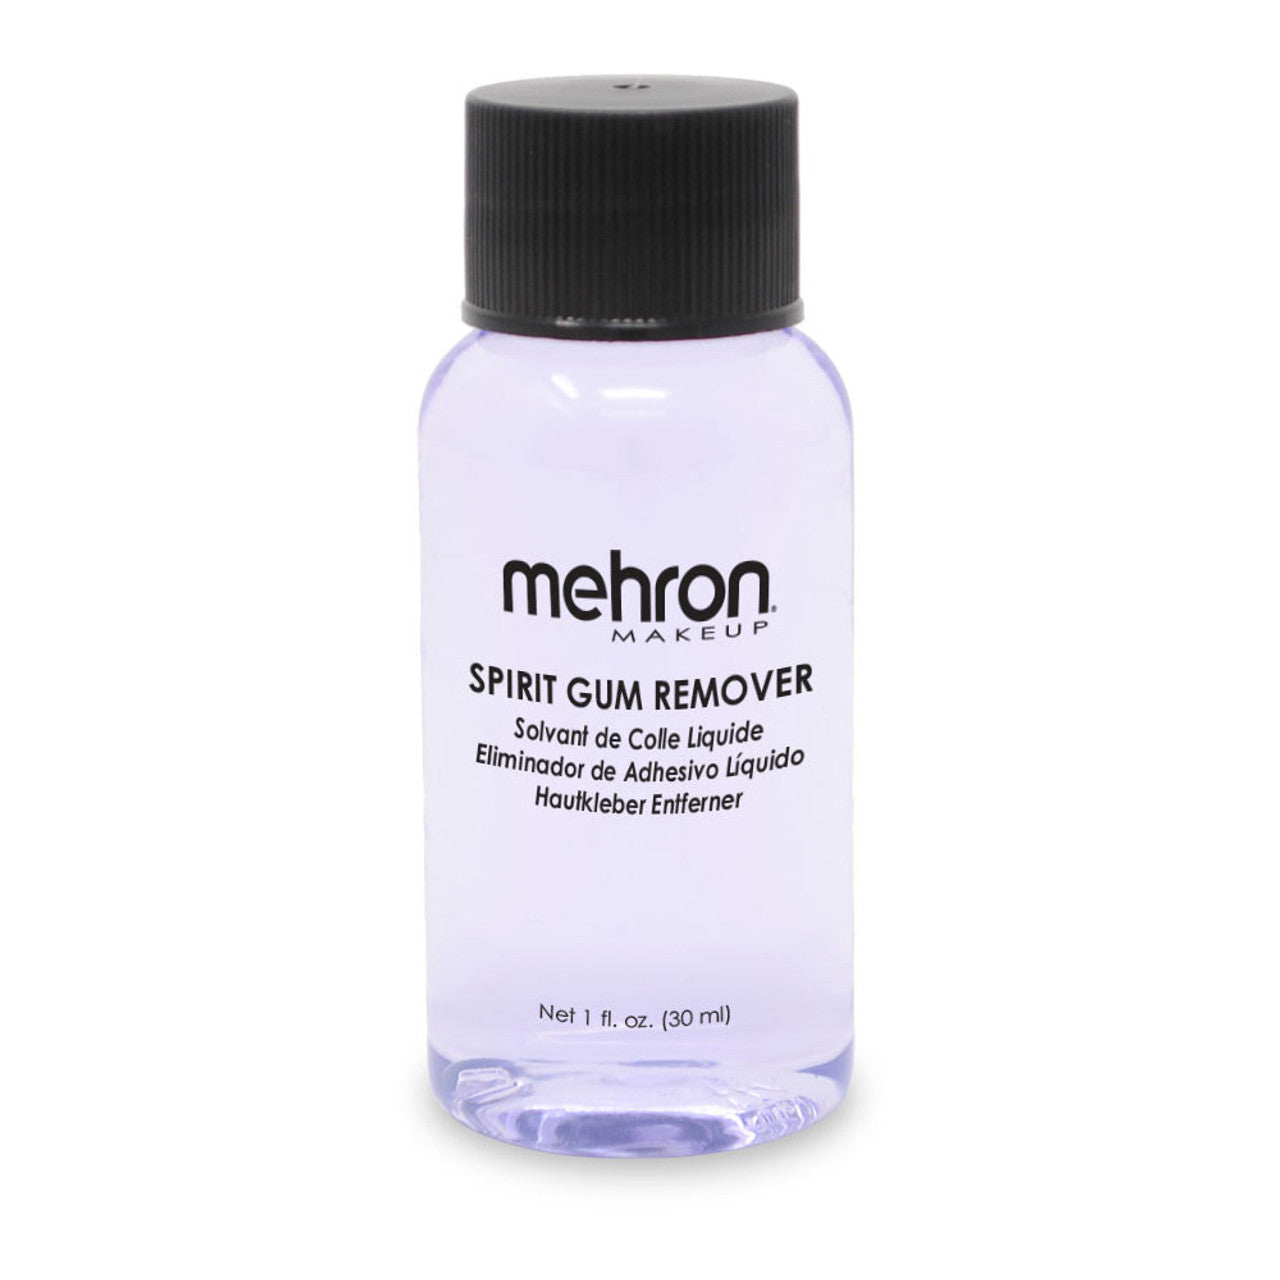 Mehron COSTUMES: MAKE-UP Spirit Gum Remover 1 oz